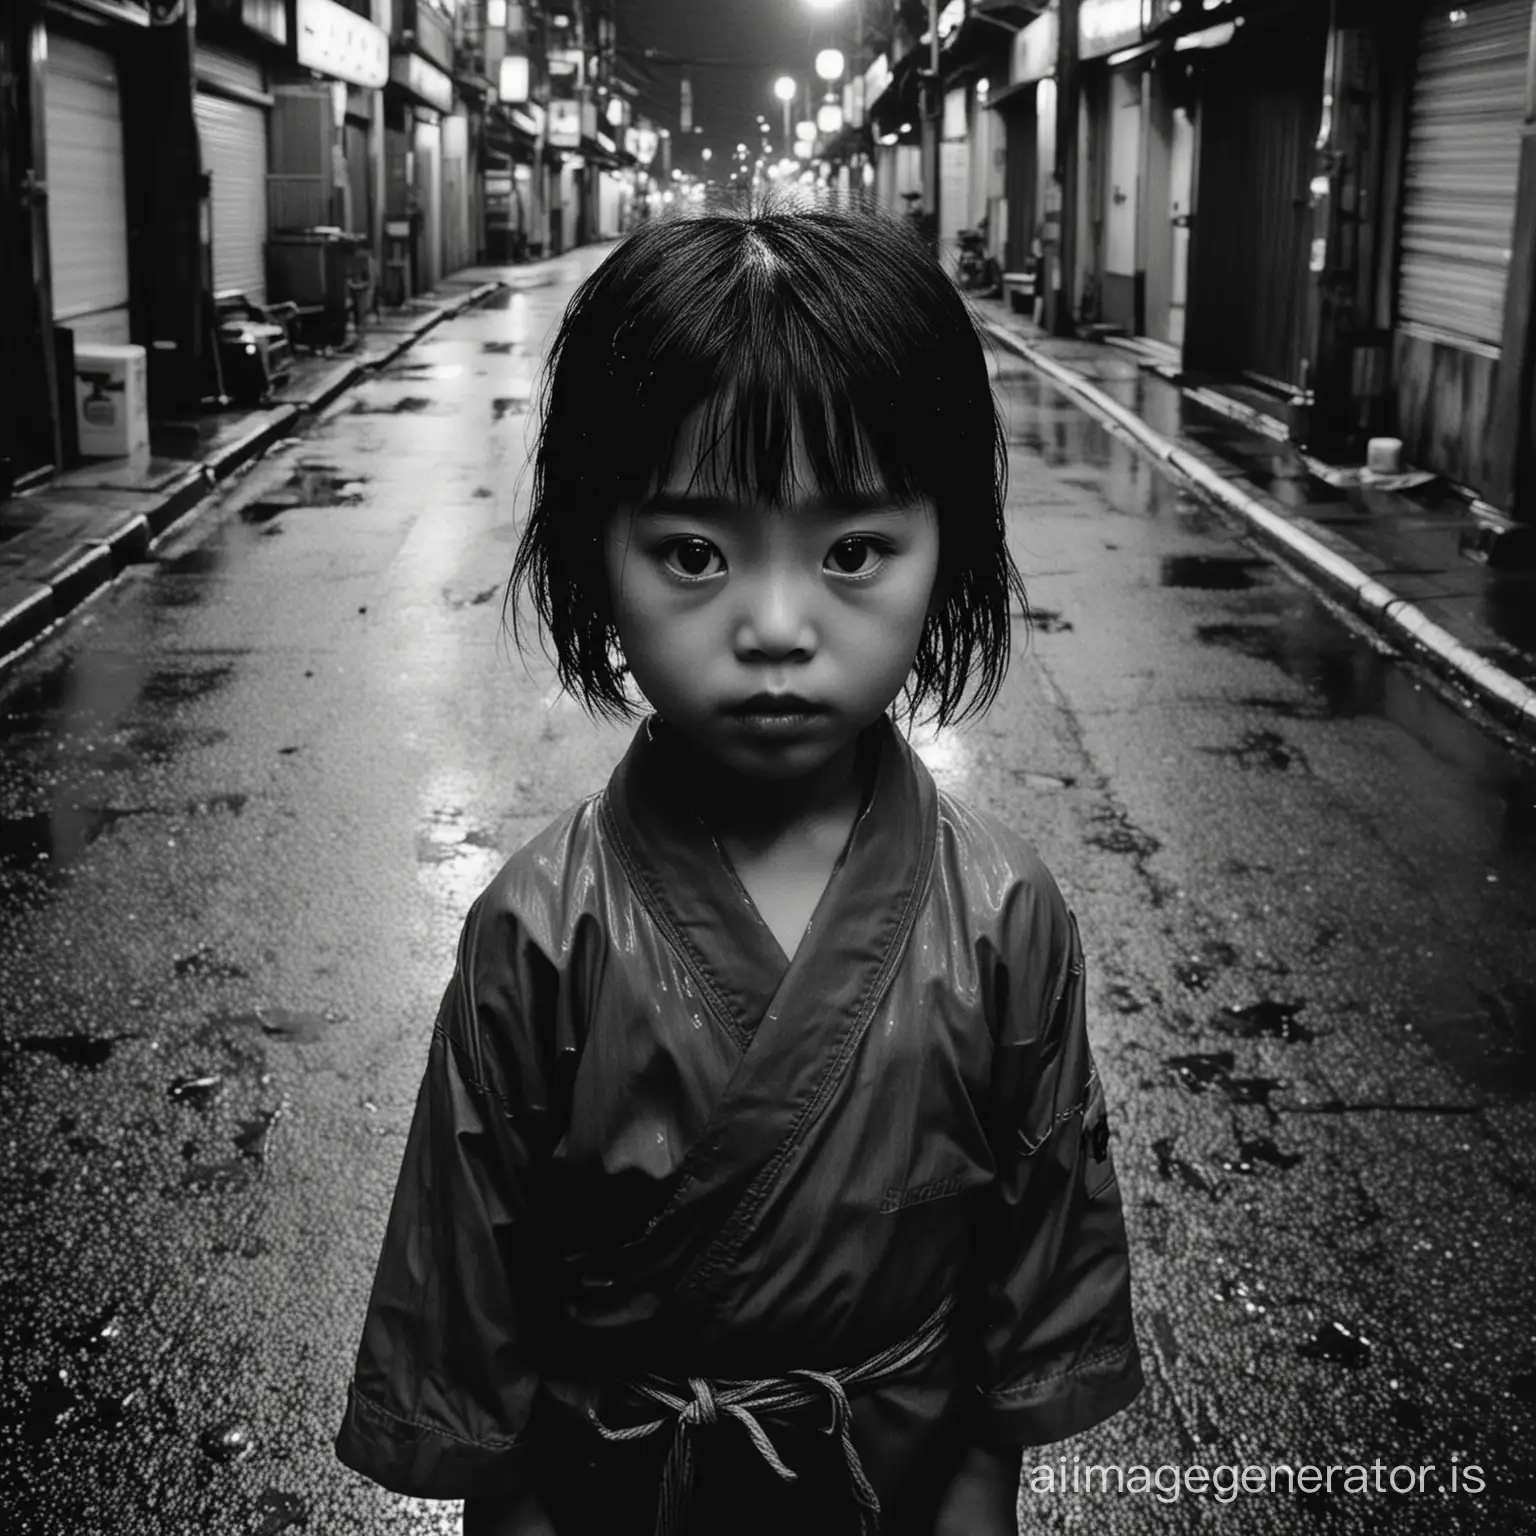 Melancholic-Japanese-Child-in-Rainy-Tokyo-Alley-Daido-Moriyama-Inspired-Portrait